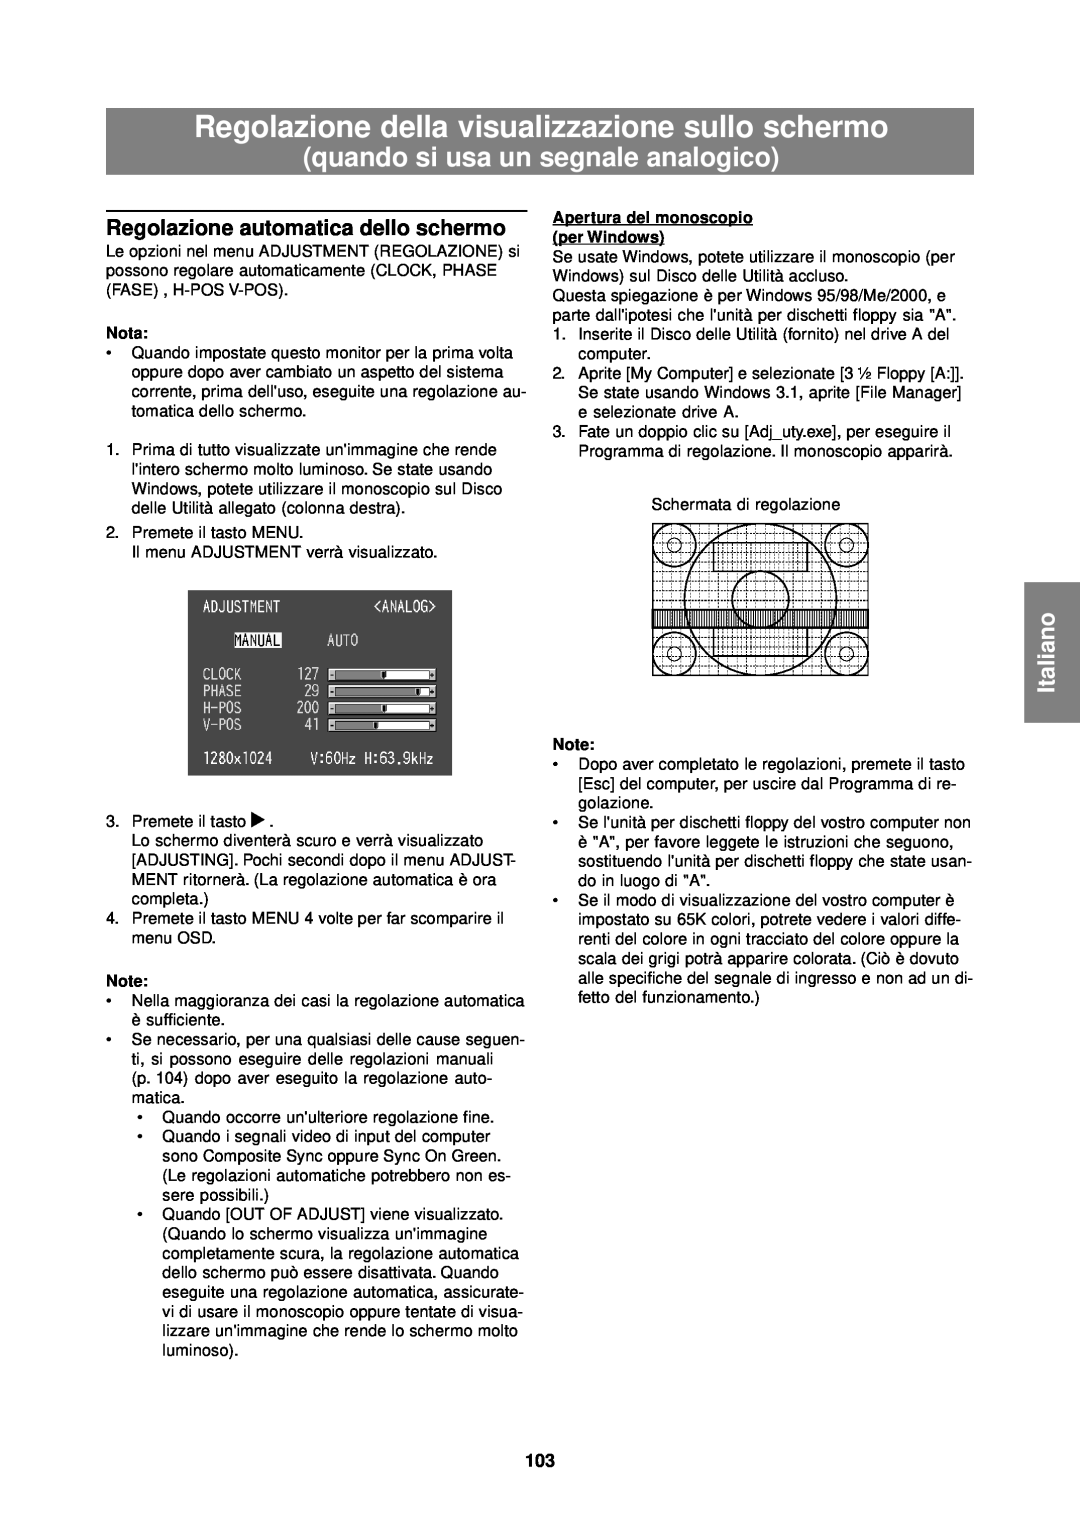 Sharp LL-T1610W Regolazione della visualizzazione sullo schermo, quando si usa un segnale analogico, Italiano, Nota 